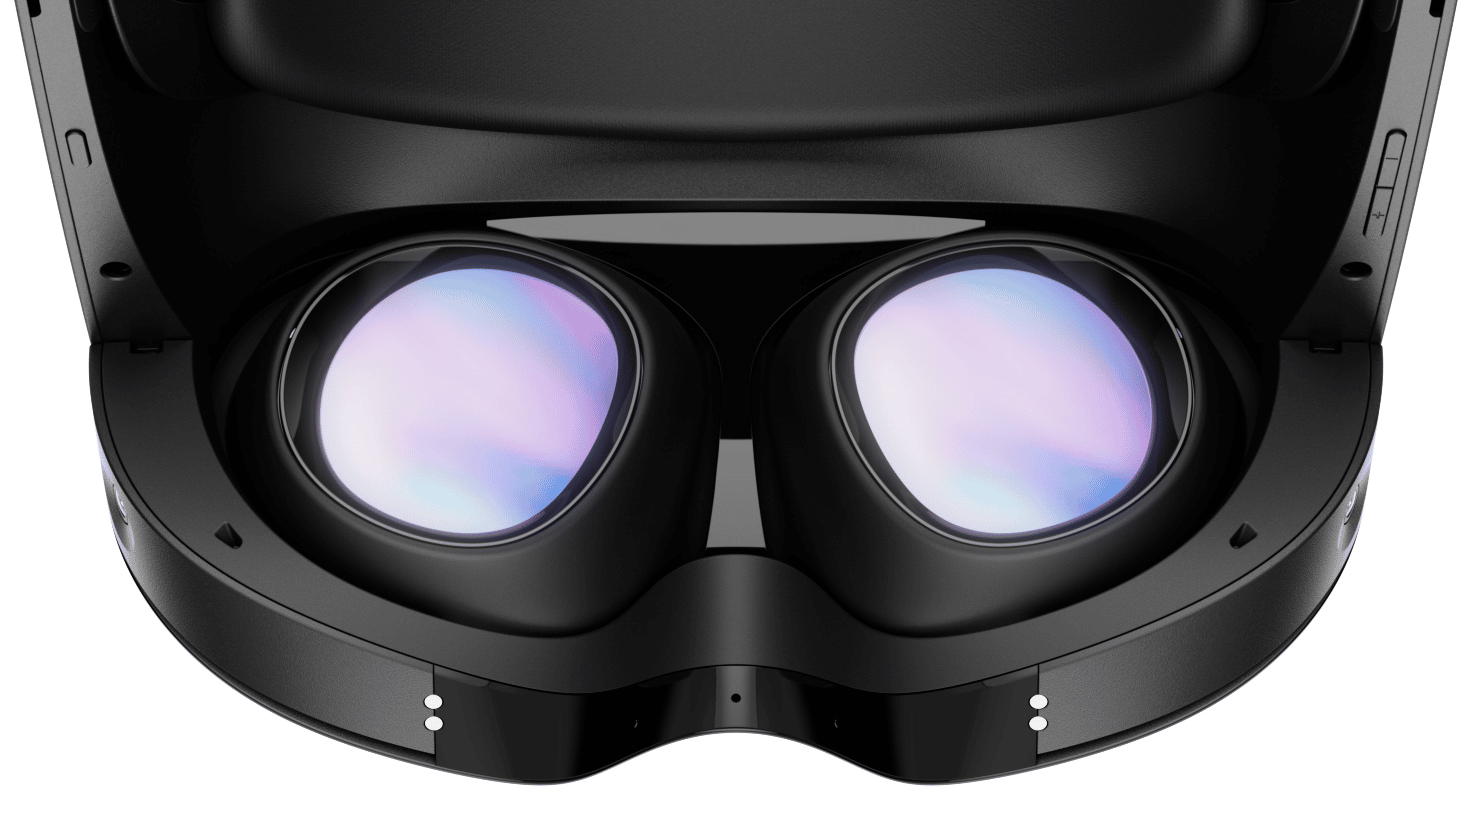 Meta Acquisition vil hjelpe 'utvikle bedre visningsoptikk' for VR og AR